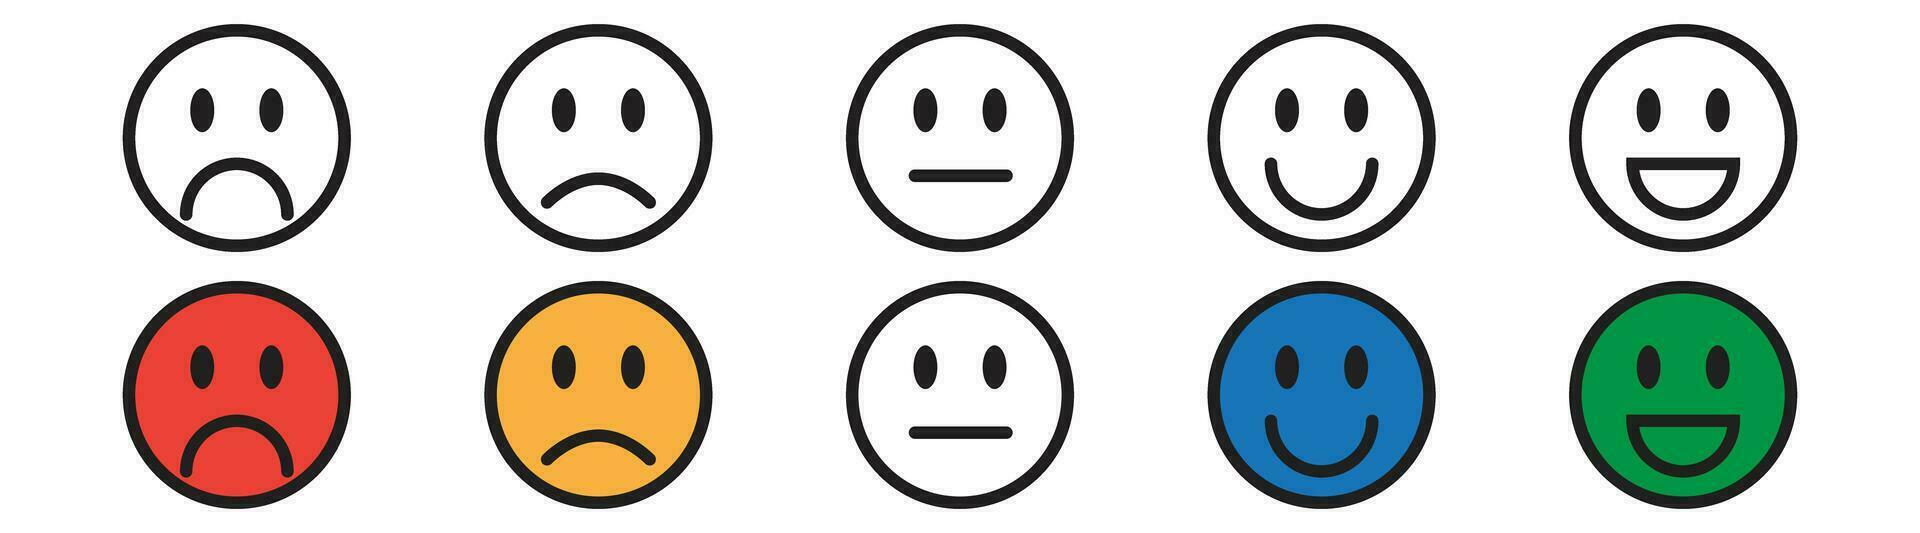 soddisfazione sondaggio emoji emoticon triste Sorridi, neutro Positif negativo vettore